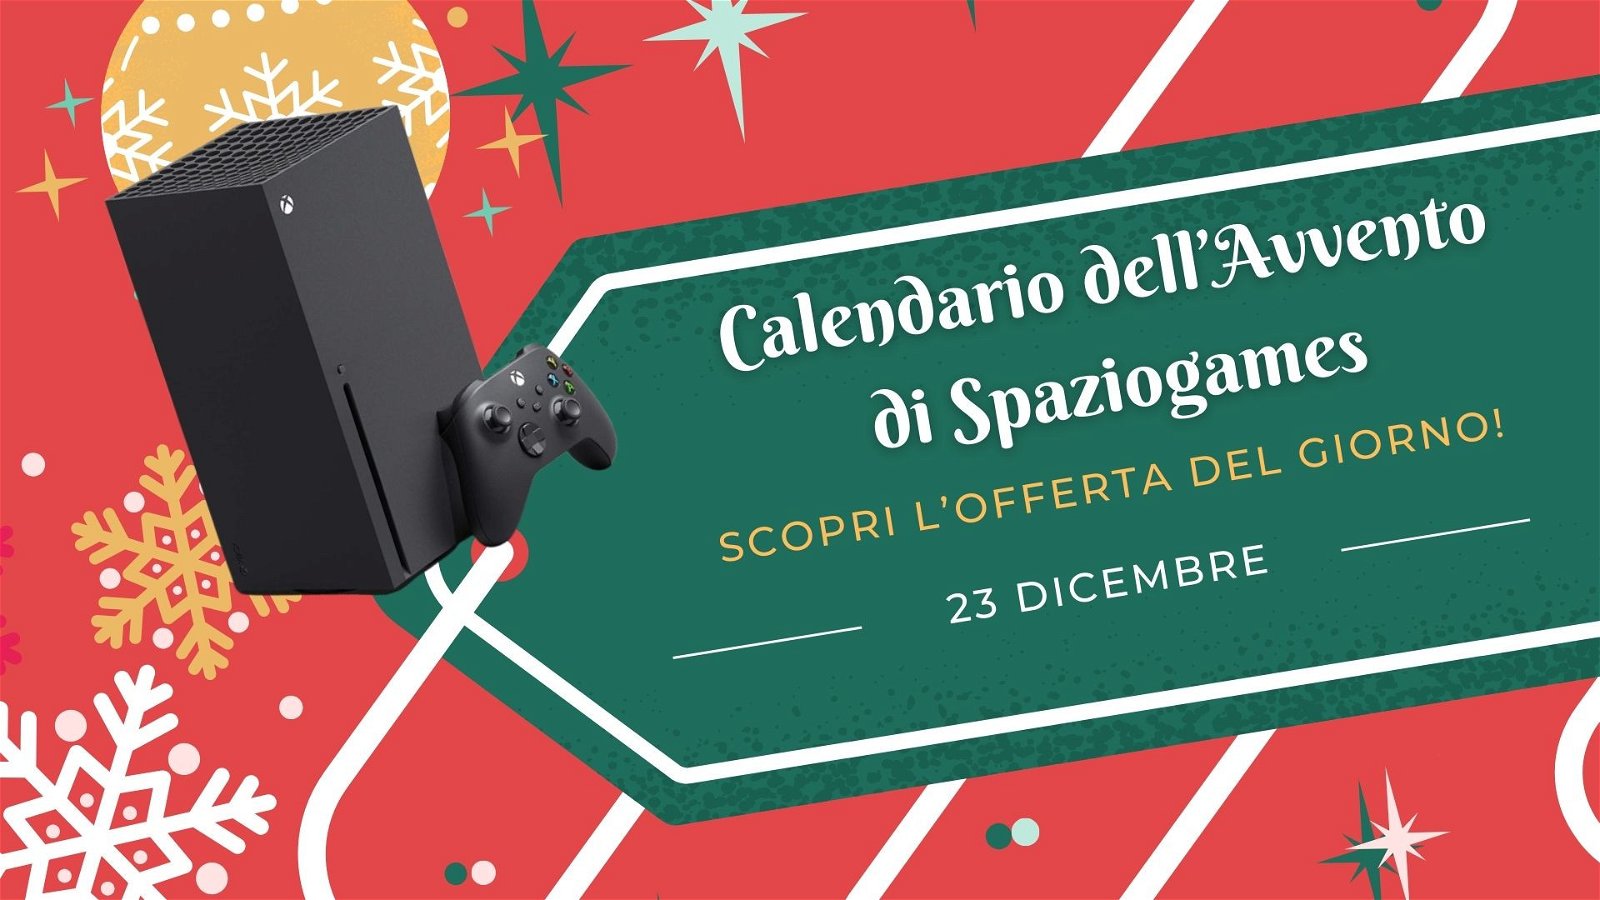 Calendario dell'avvento di Spaziogames: scopri l'offerta del 23 dicembre -  SpazioGames